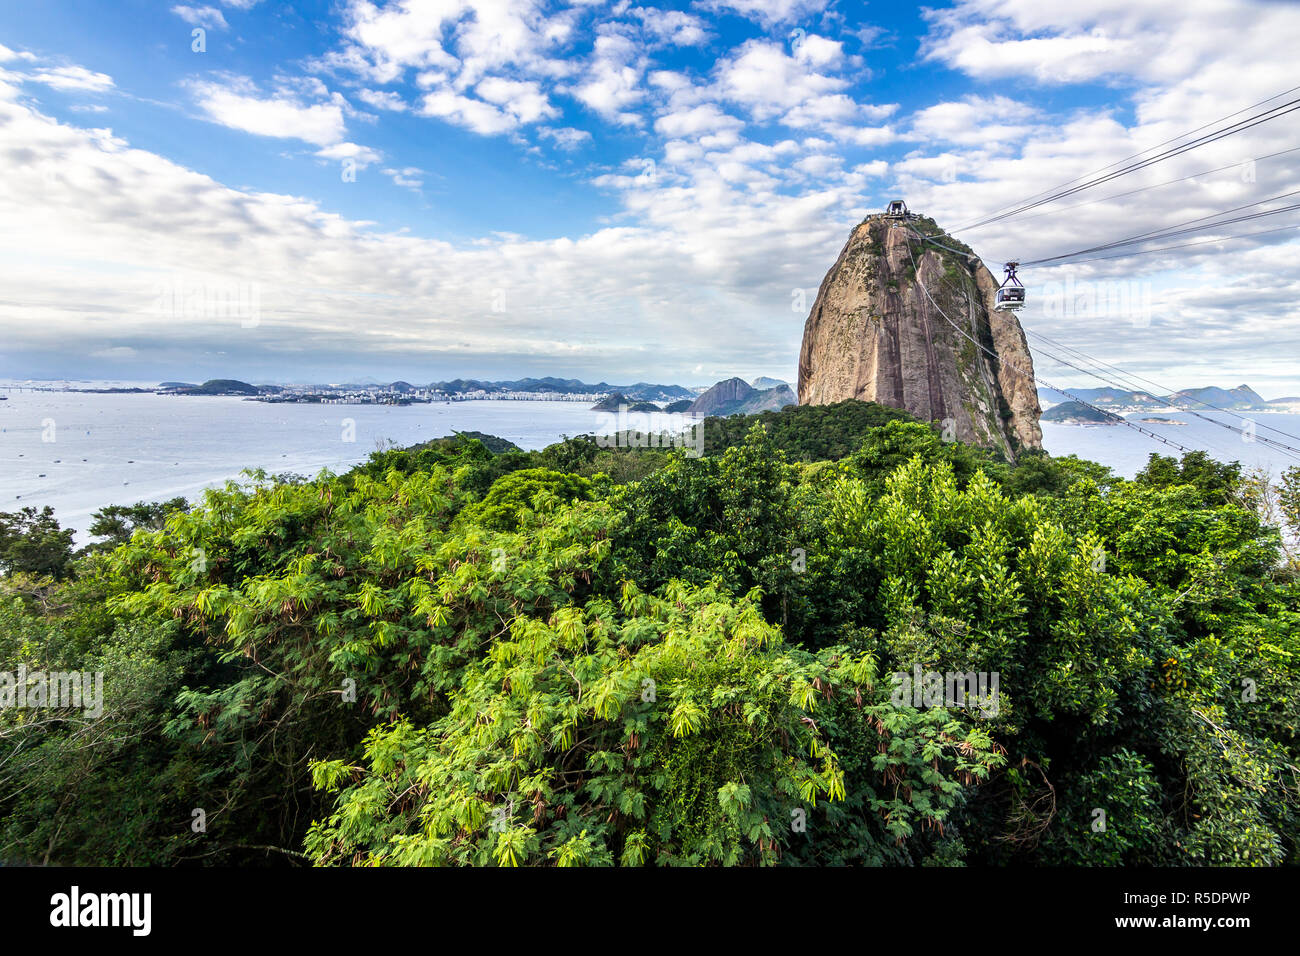 Vistas a la montaña Pan de Azúcar y la ciudad de Rio de Janeiro, suburbios y favelas, impresionantes vistas sobre las bahías, islas, la playa y el horizonte de la ciudad Foto de stock